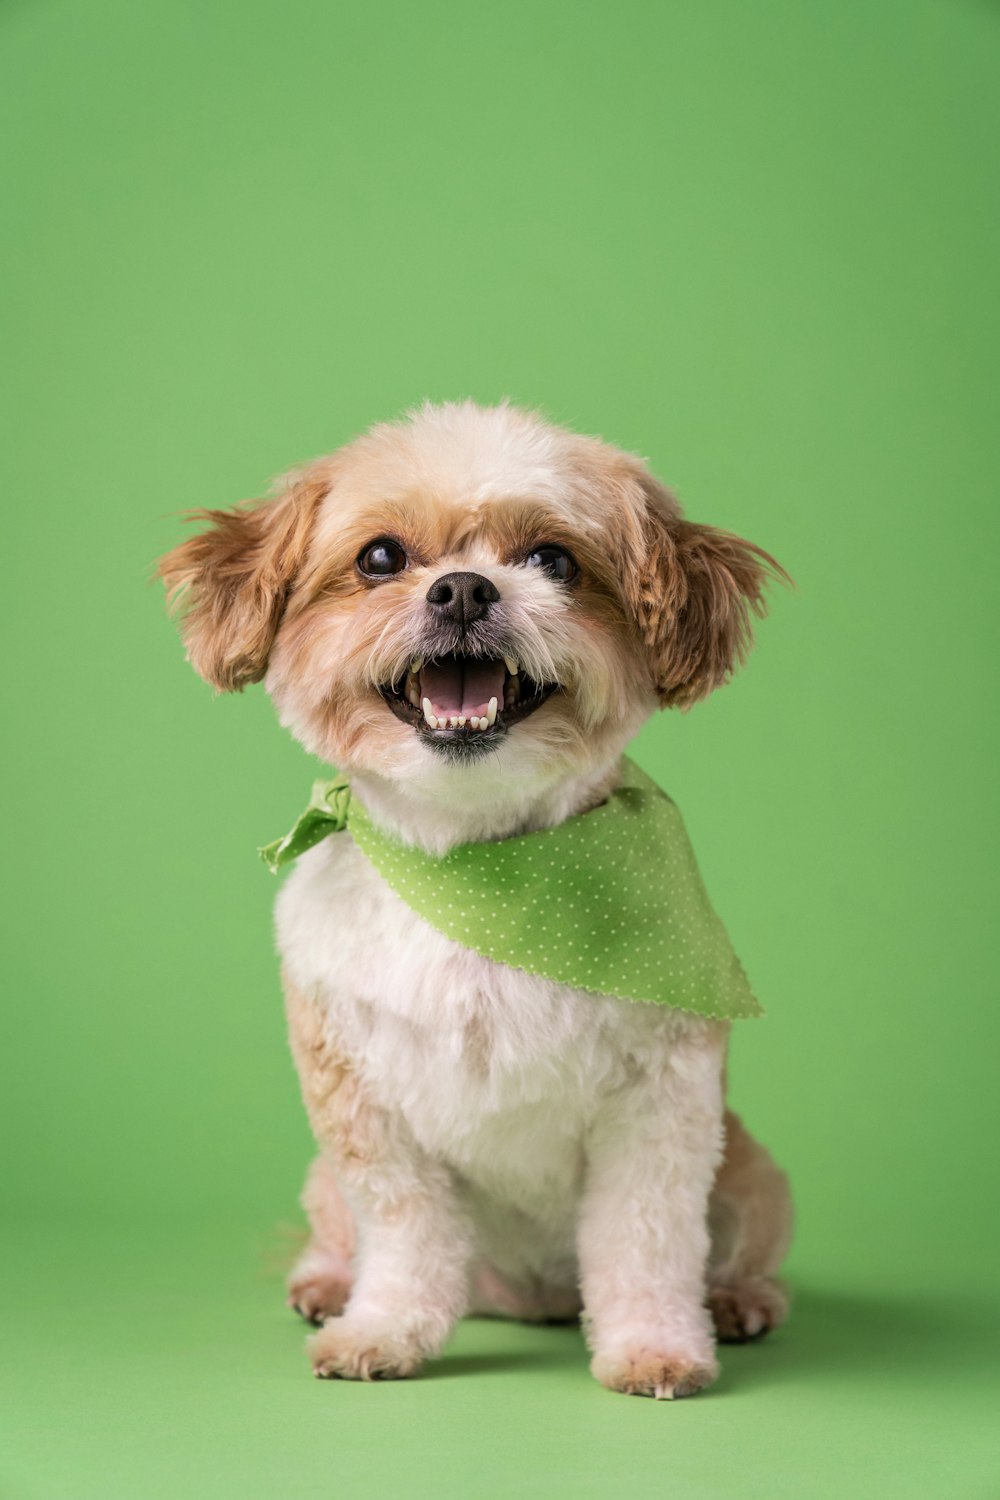 a small dog wearing a green bandana